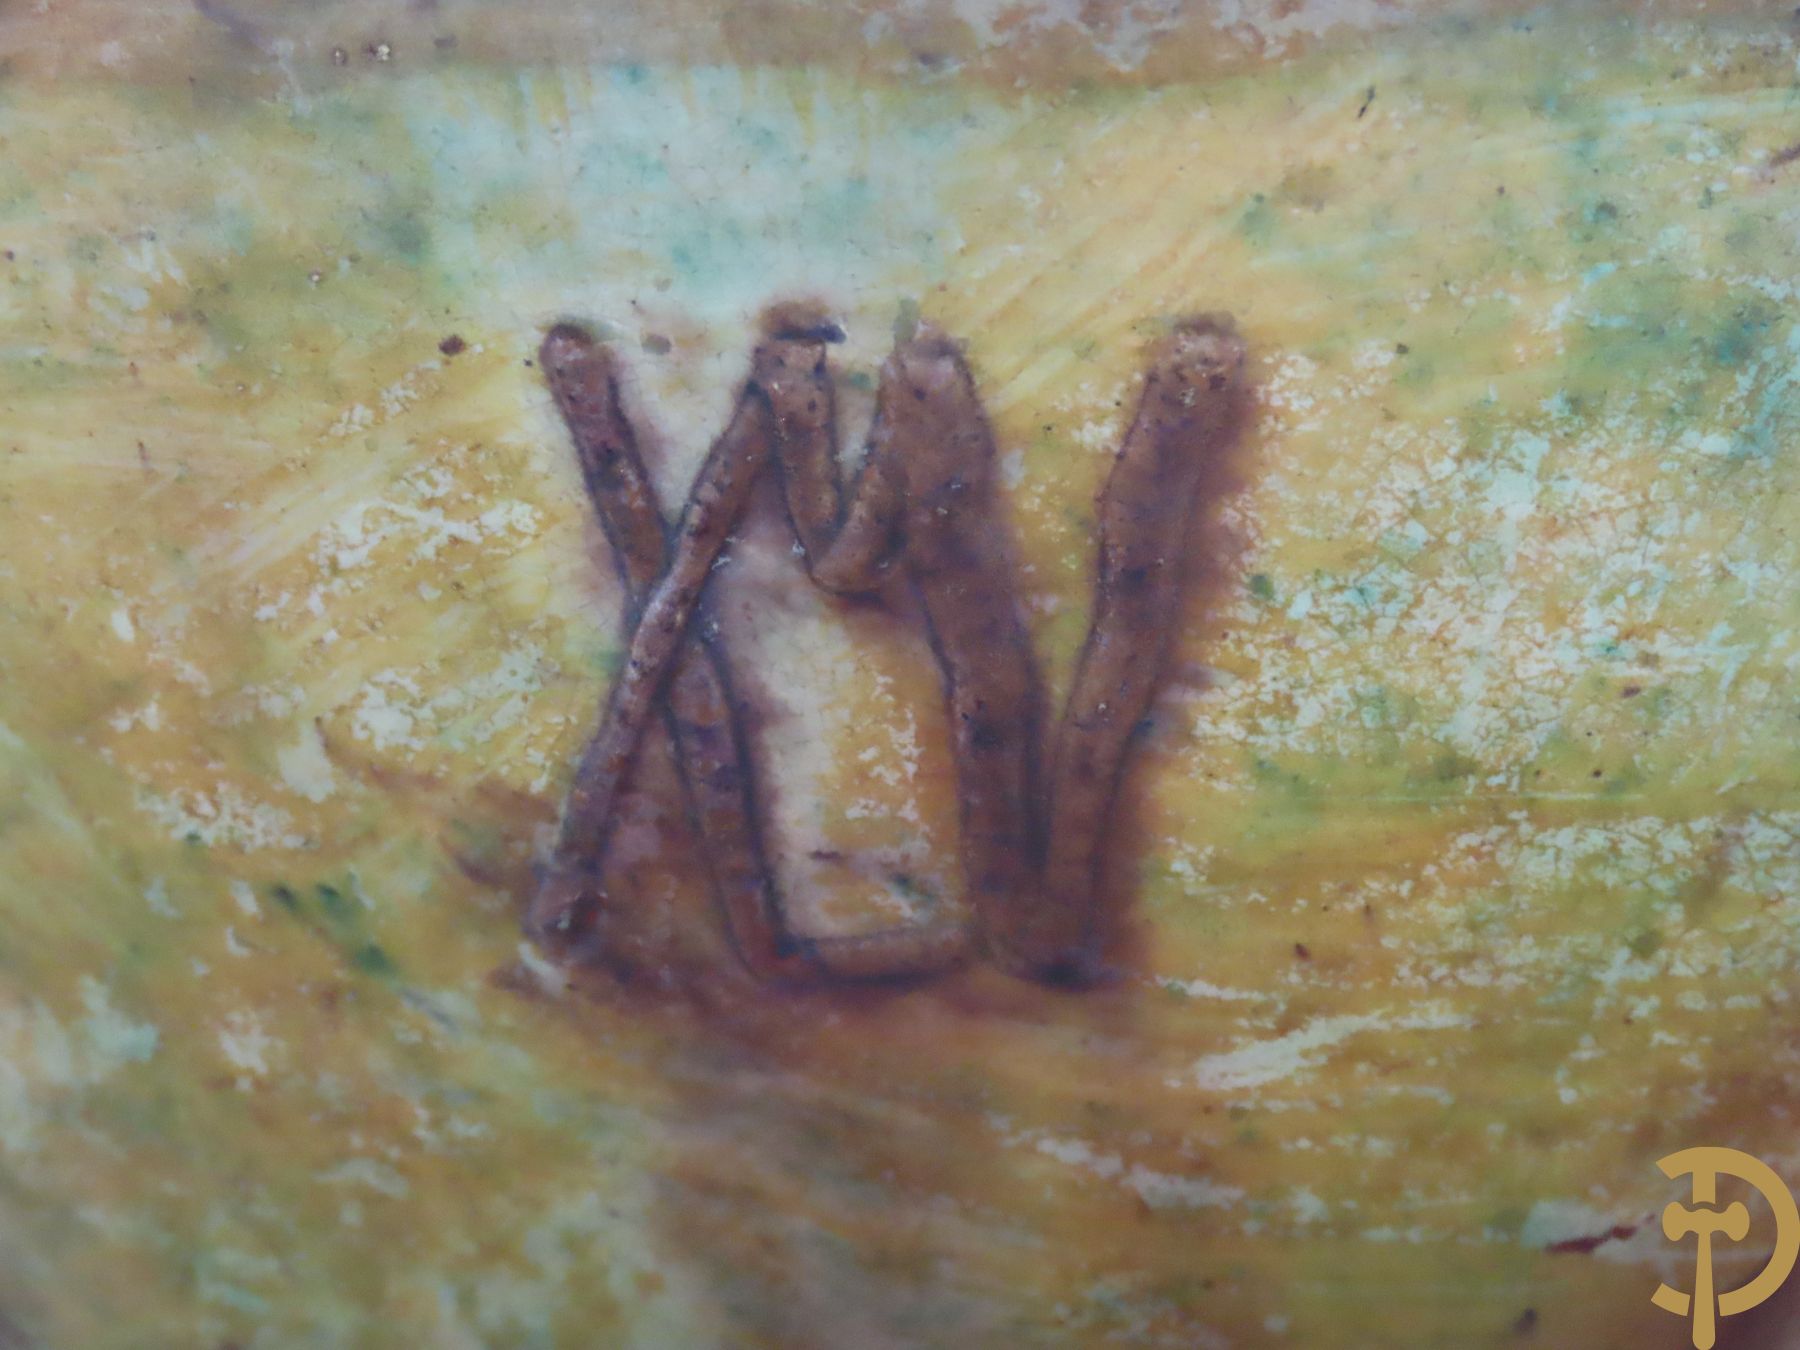 Torhoutse drieorige aardewerken vaas met begijntjes op stap, LMV gemerkt